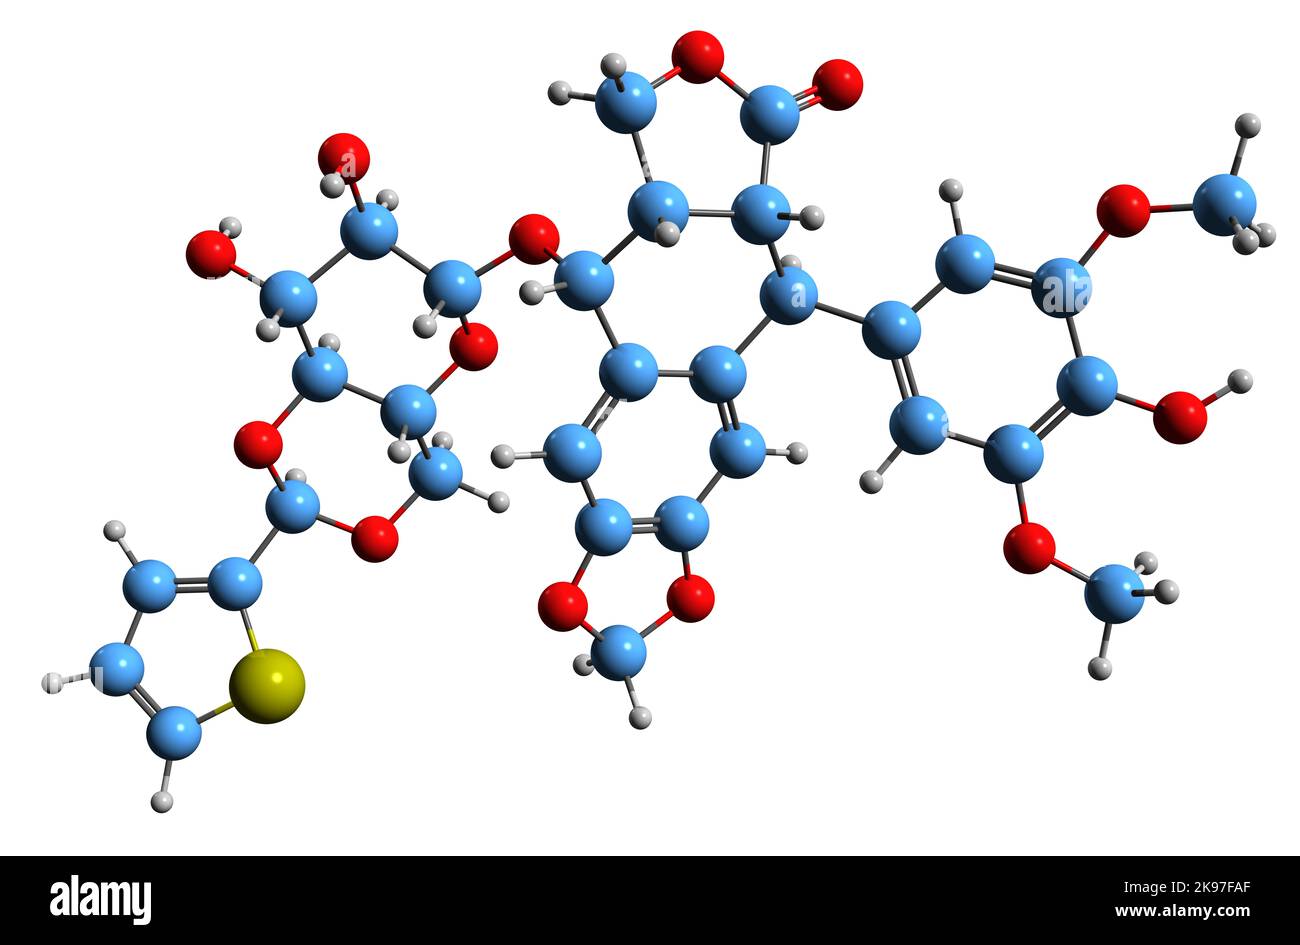 3D Bild der Skelettformel von Teniposid - molekularchemische Struktur chemotherapeutischer Medikamente isoliert auf weißem Hintergrund Stockfoto